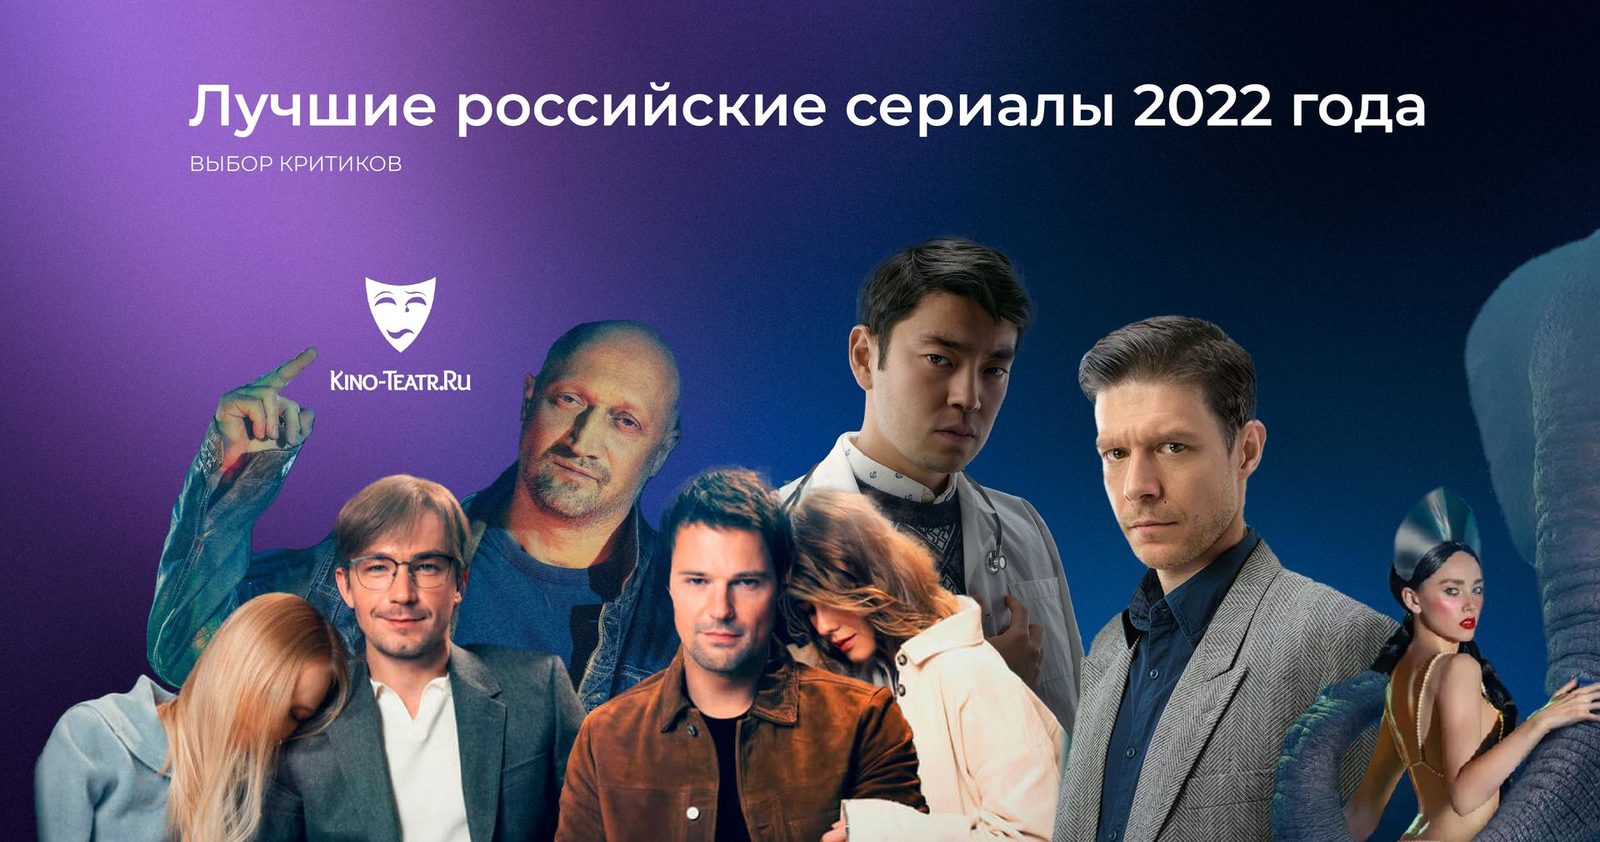 Критики назвали лучшие российские сериалы 2022 года